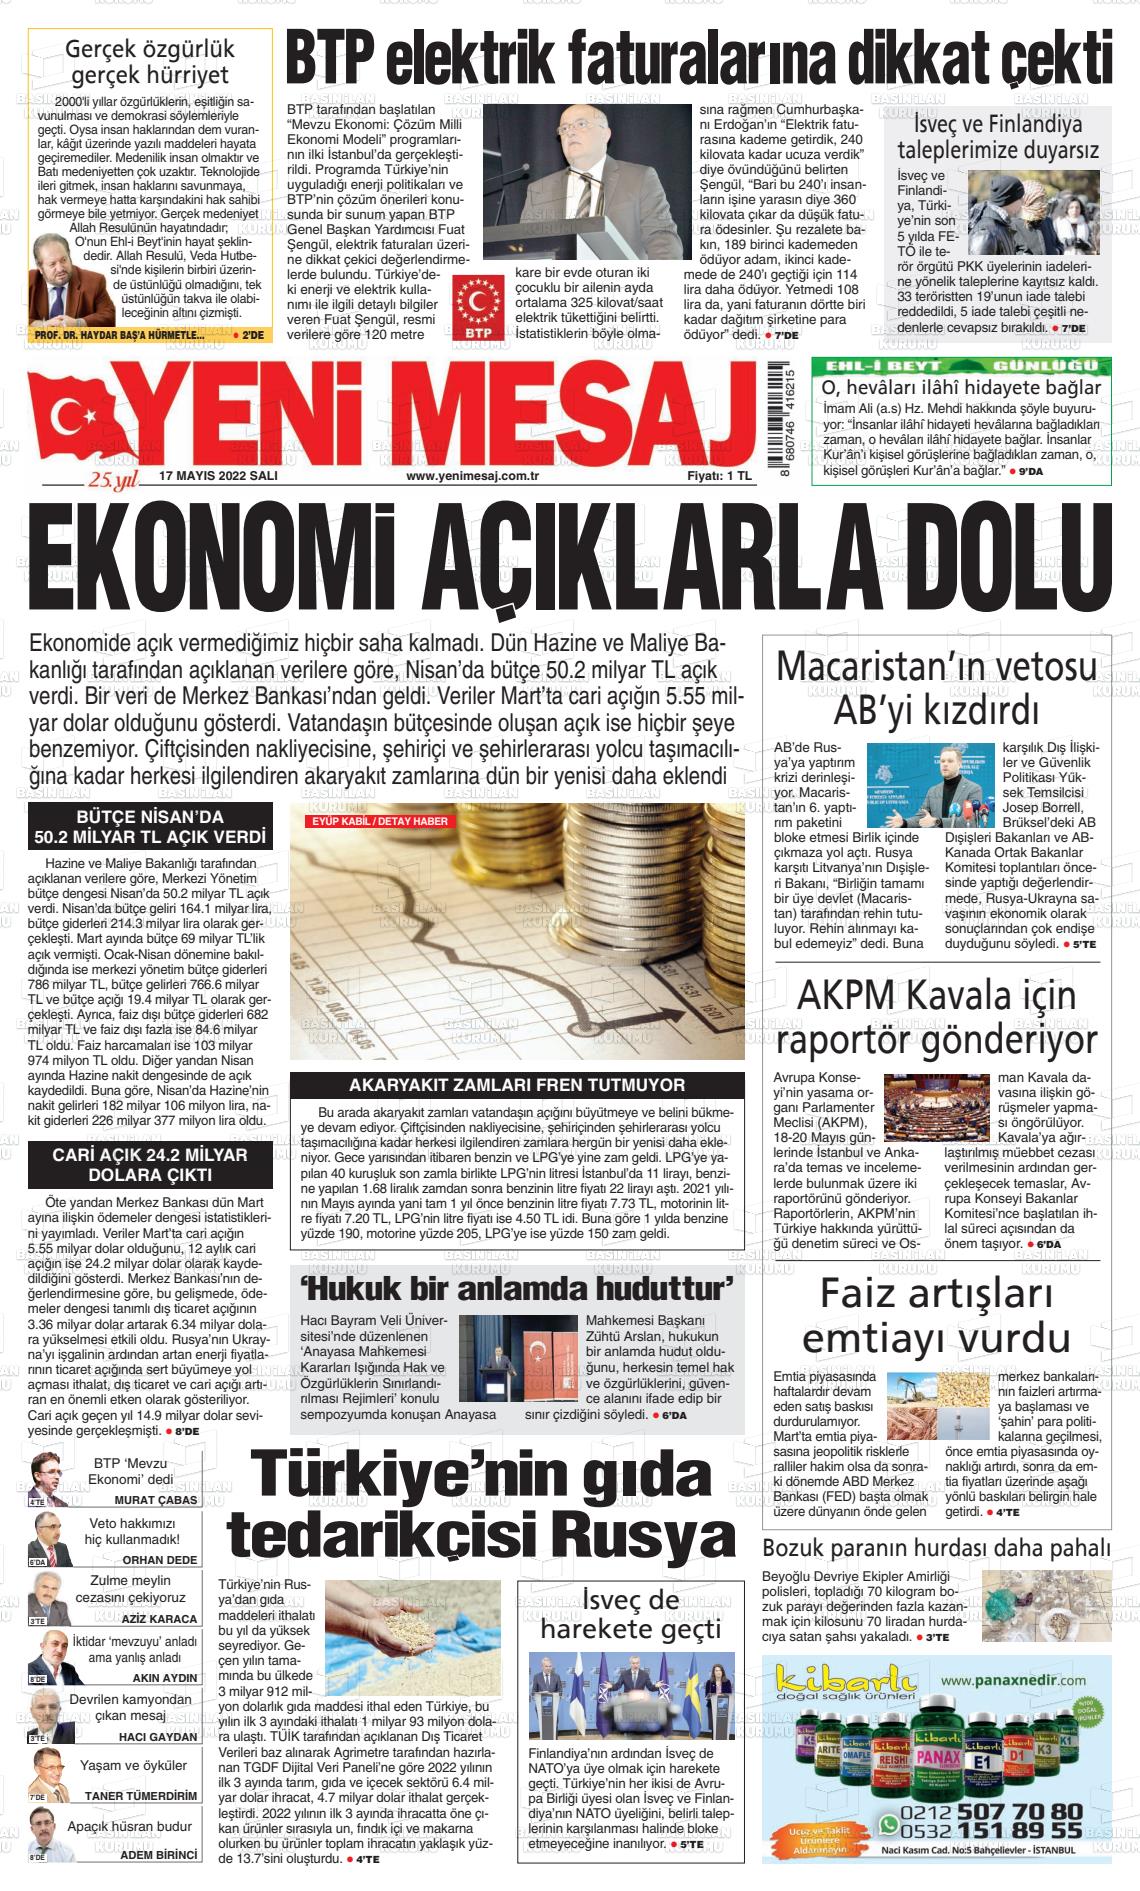 17 Mayıs 2022 Yeni Mesaj Gazete Manşeti